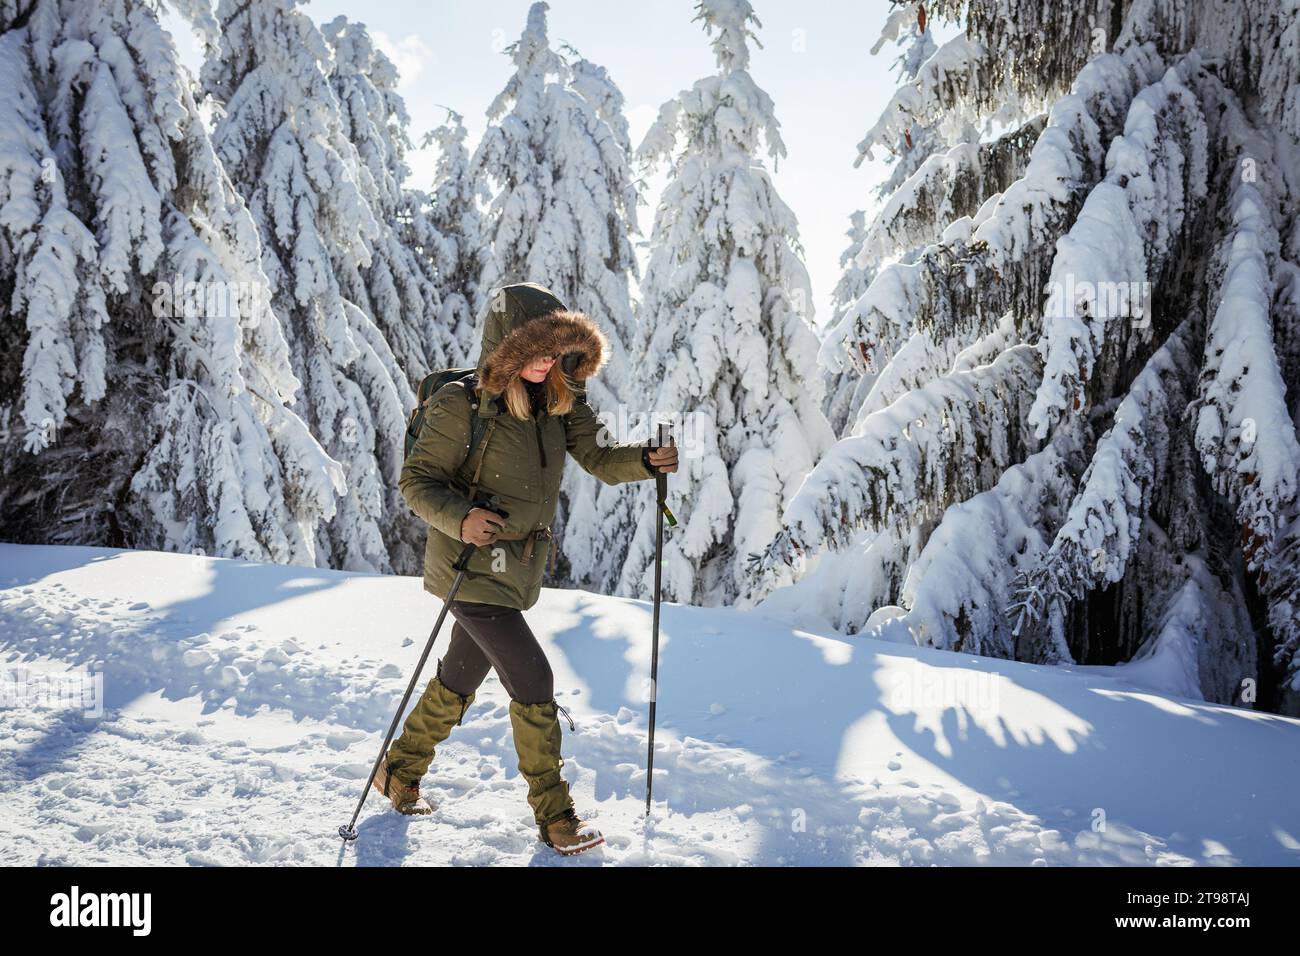 Randonnée dans la forêt de montagne d'hiver. Femme avec guêtre sur les bottes et manteau d'hiver marchant dans le sentier de neige. Aventure dans la nature Banque D'Images